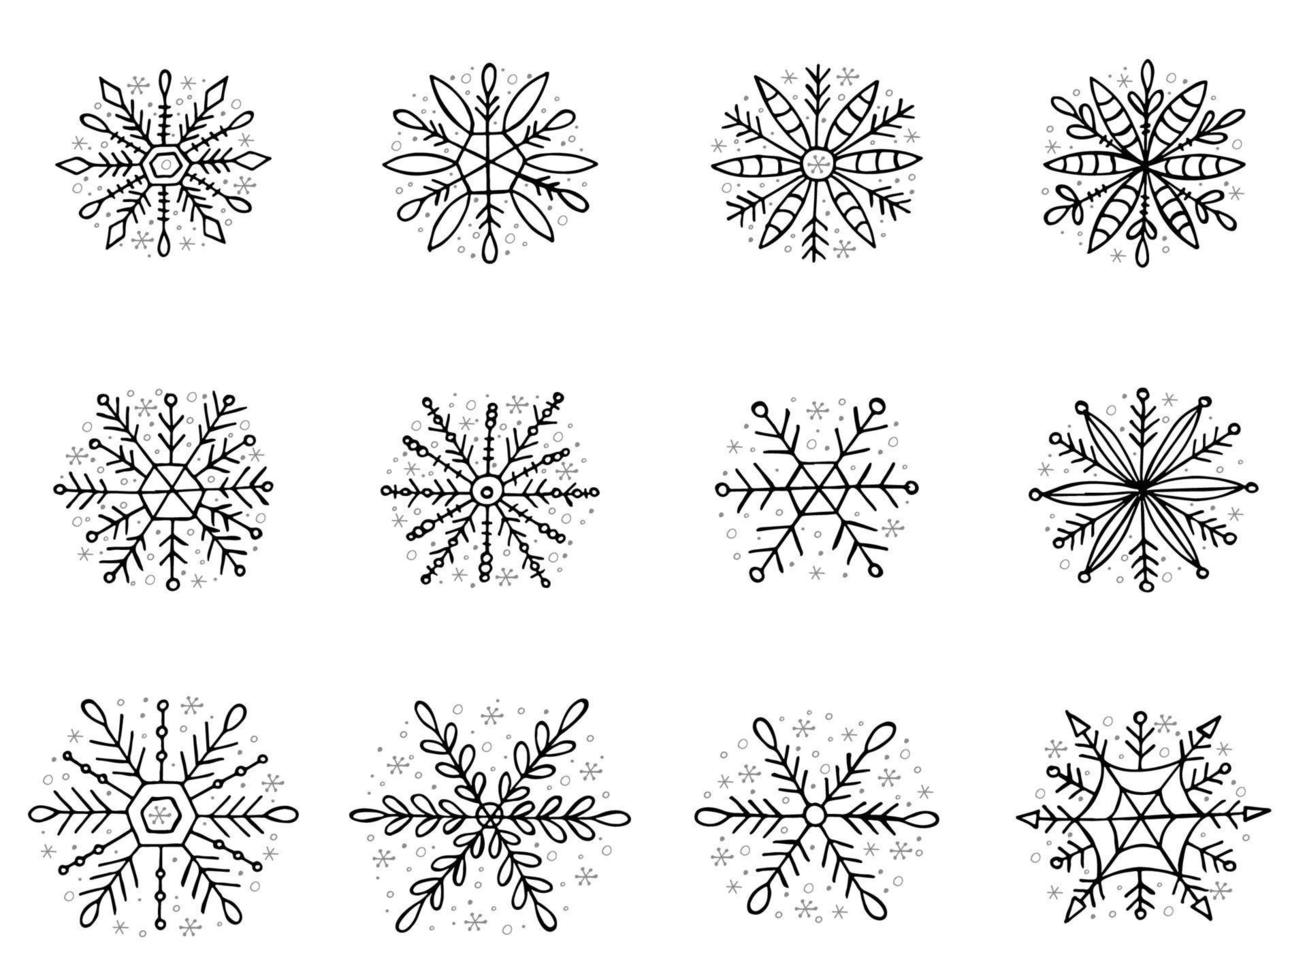 un conjunto de copos de nieve dibujados a mano. ilustración vectorial en estilo garabato. estado de ánimo de invierno. hola 2023. feliz navidad y próspero año nuevo. elementos negros sobre un fondo blanco. vector